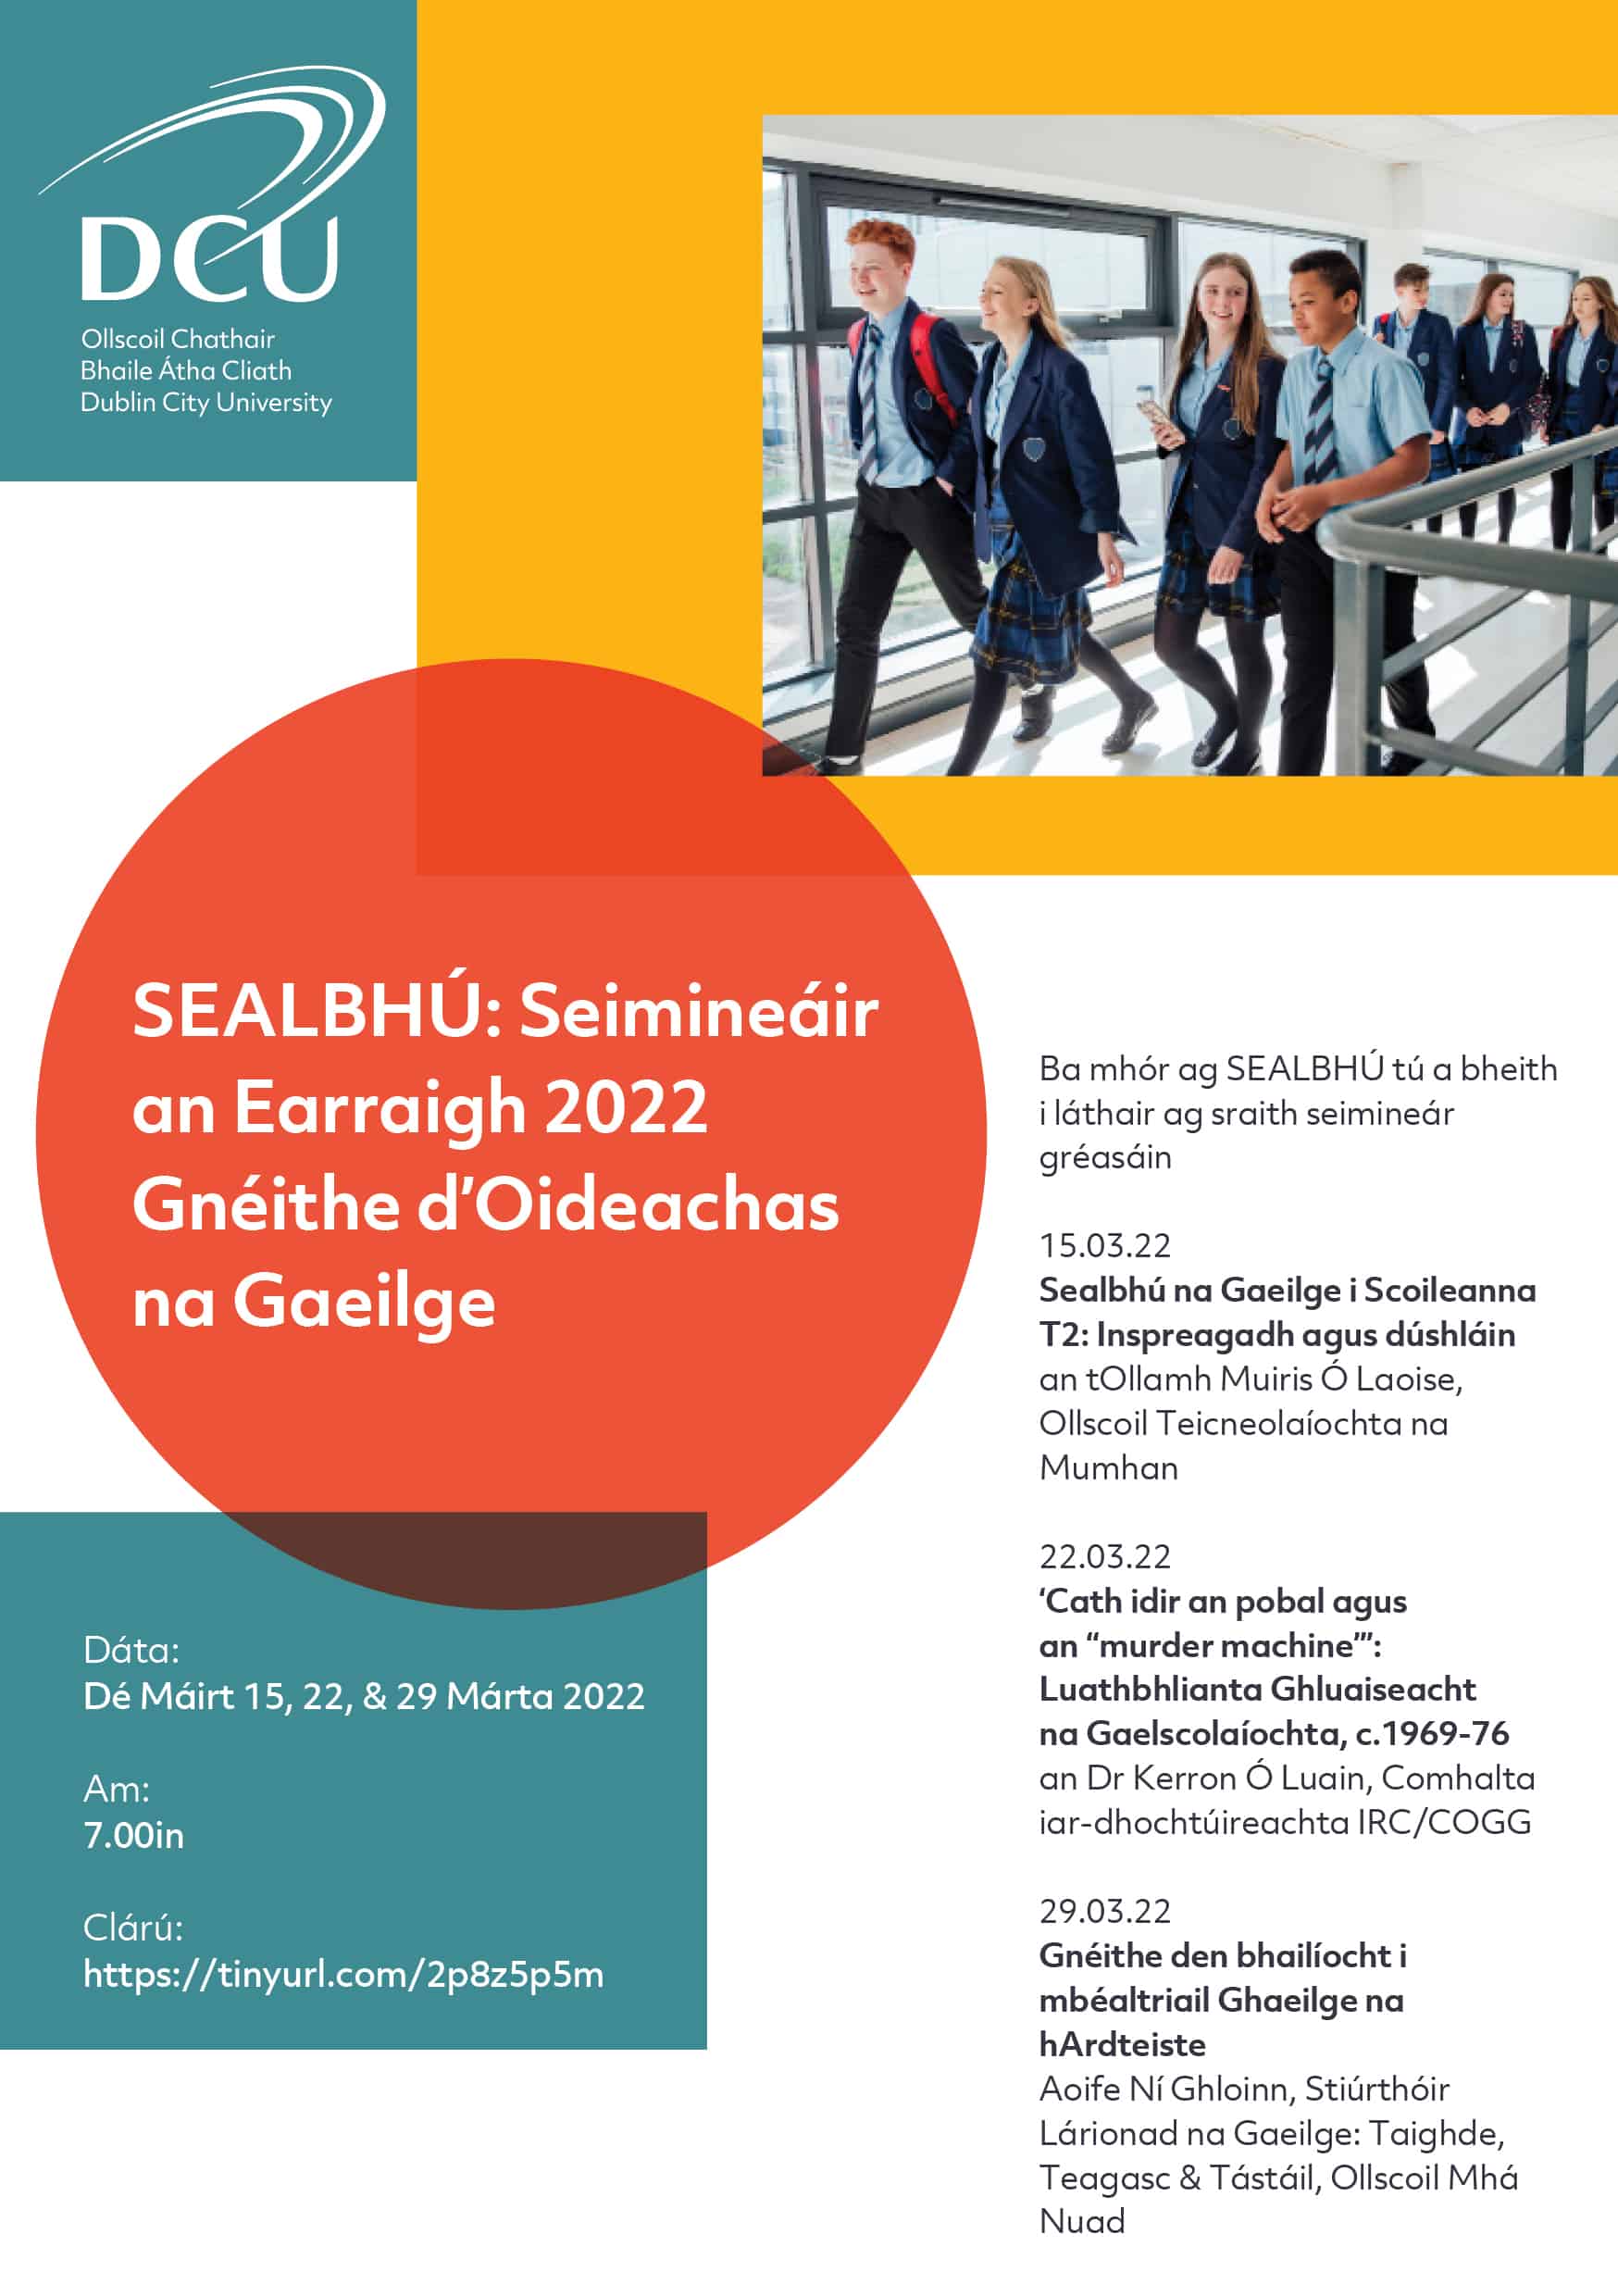 SEALBHÚ: Seimineáir an Earraigh 2022 Gnéithe d’Oideachas na Gaeilge